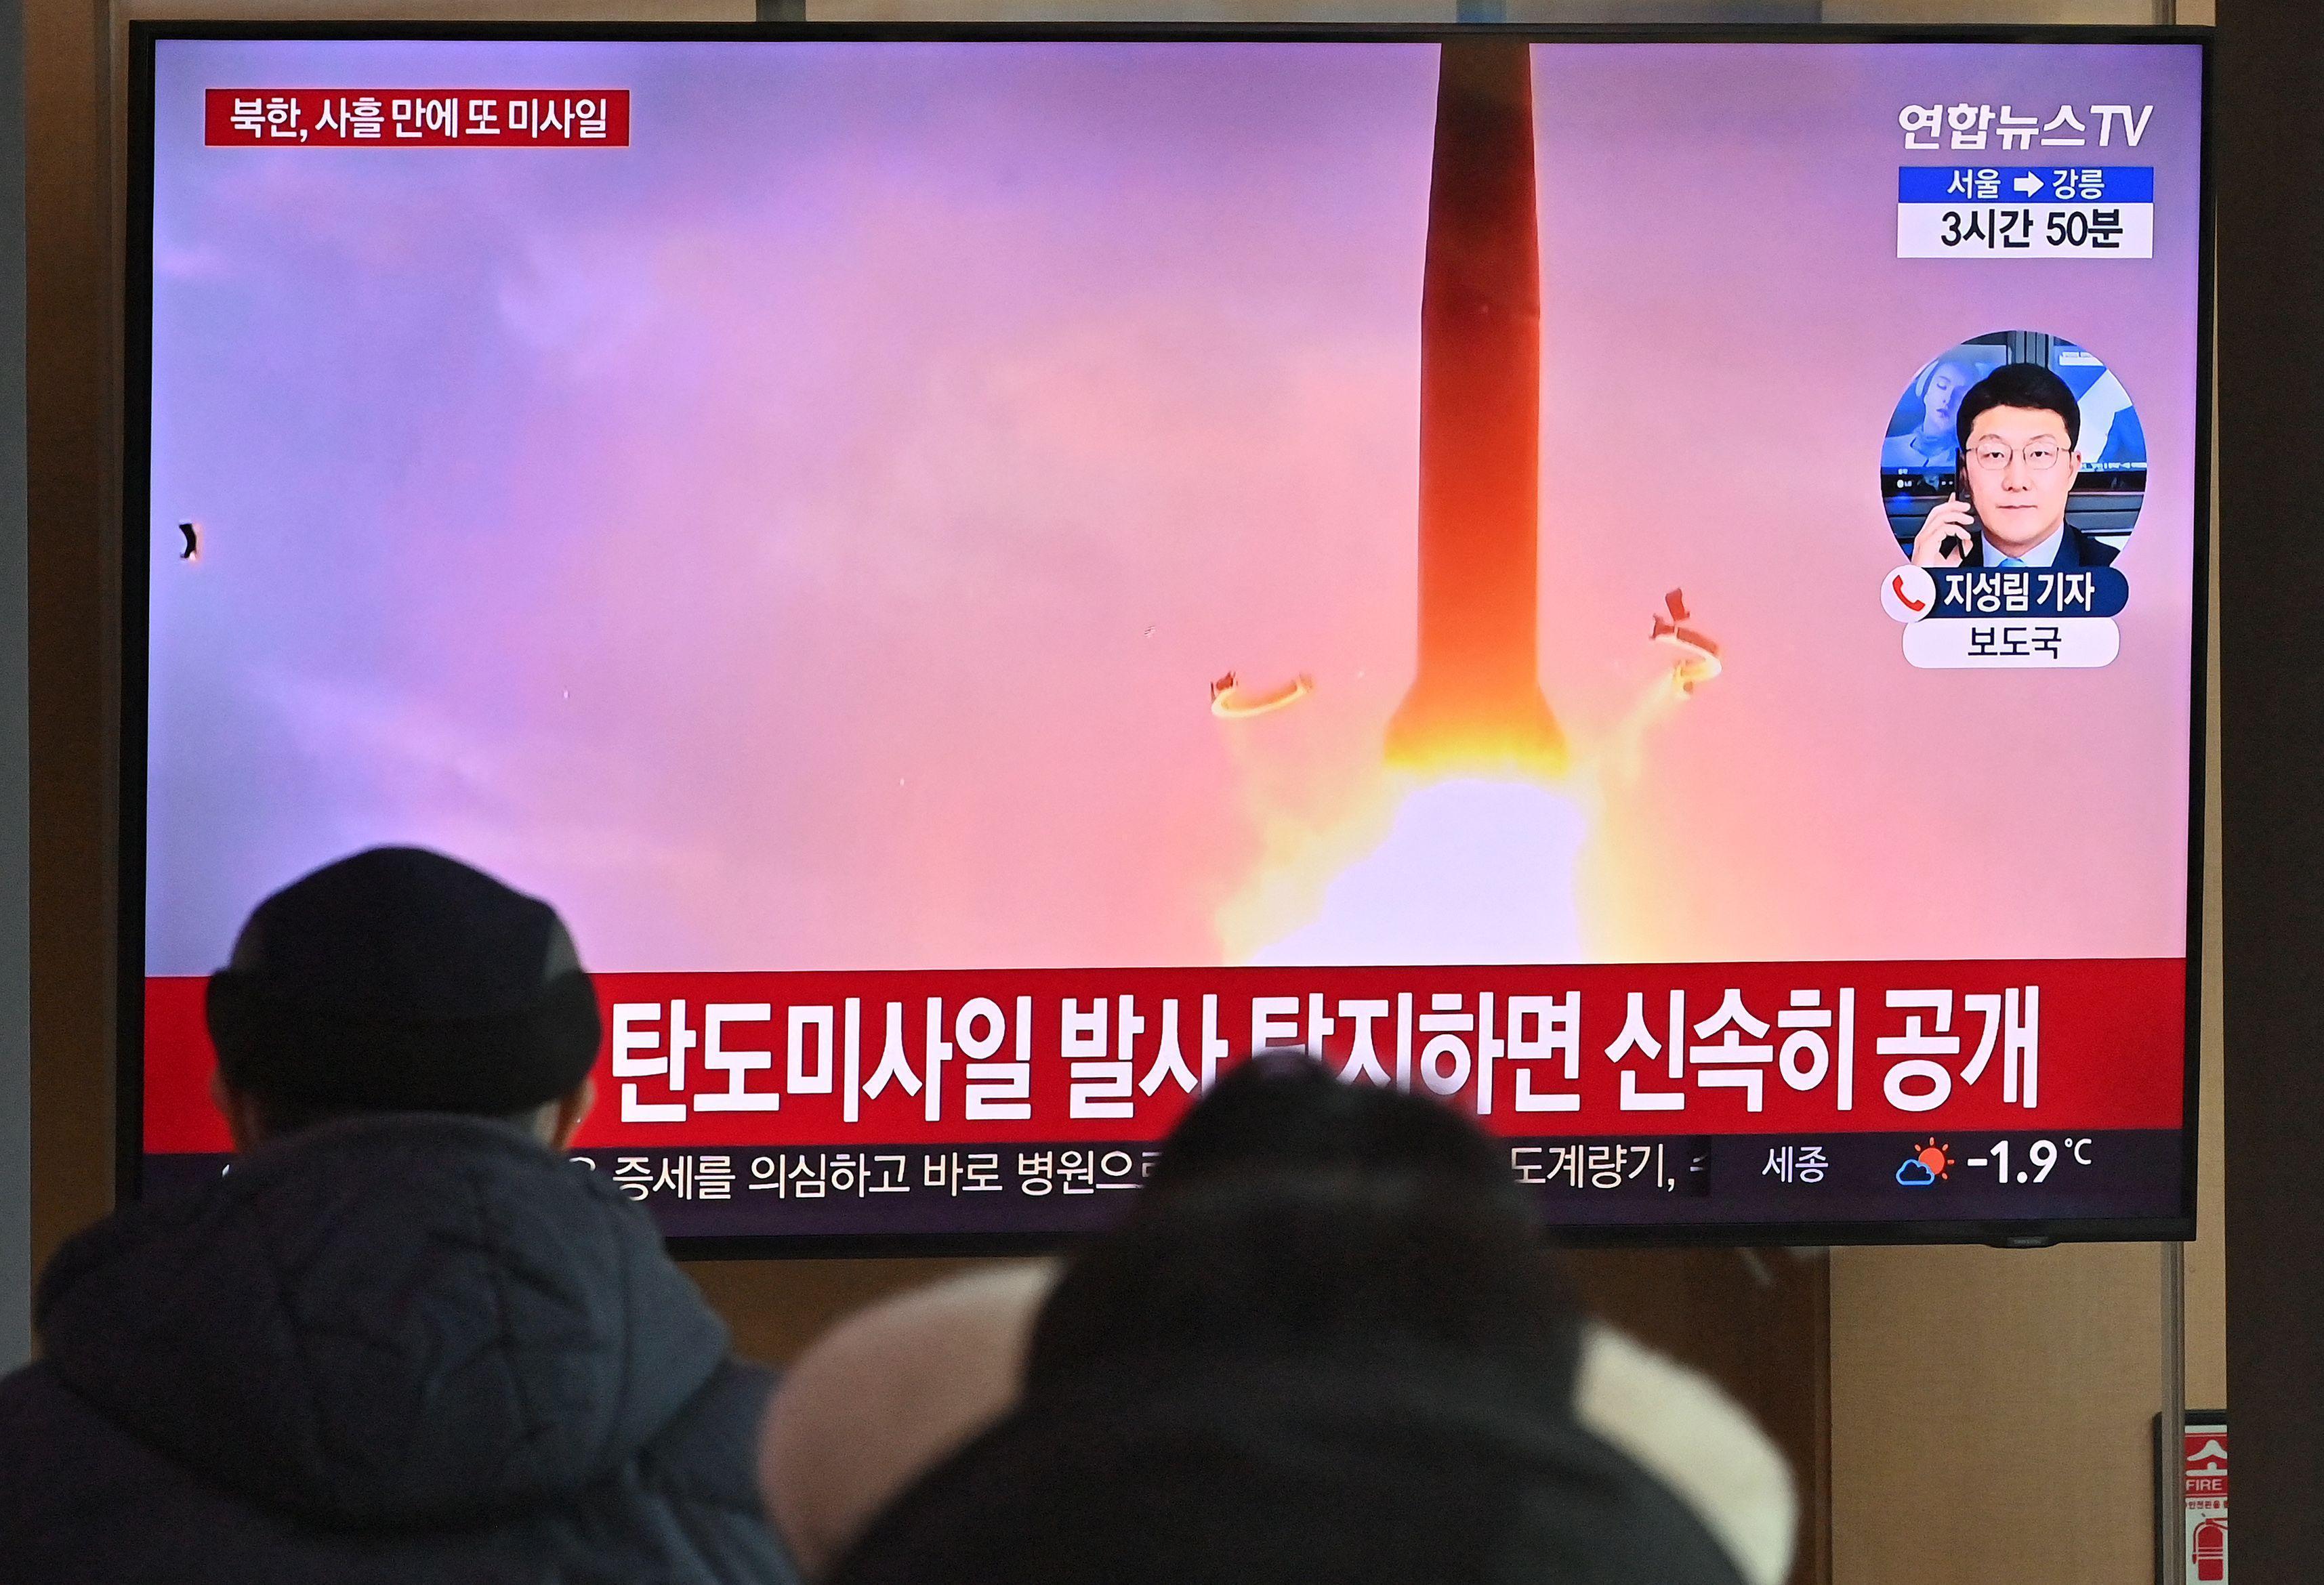 Kim Jong-unun sırrını BM ortaya çıkardı